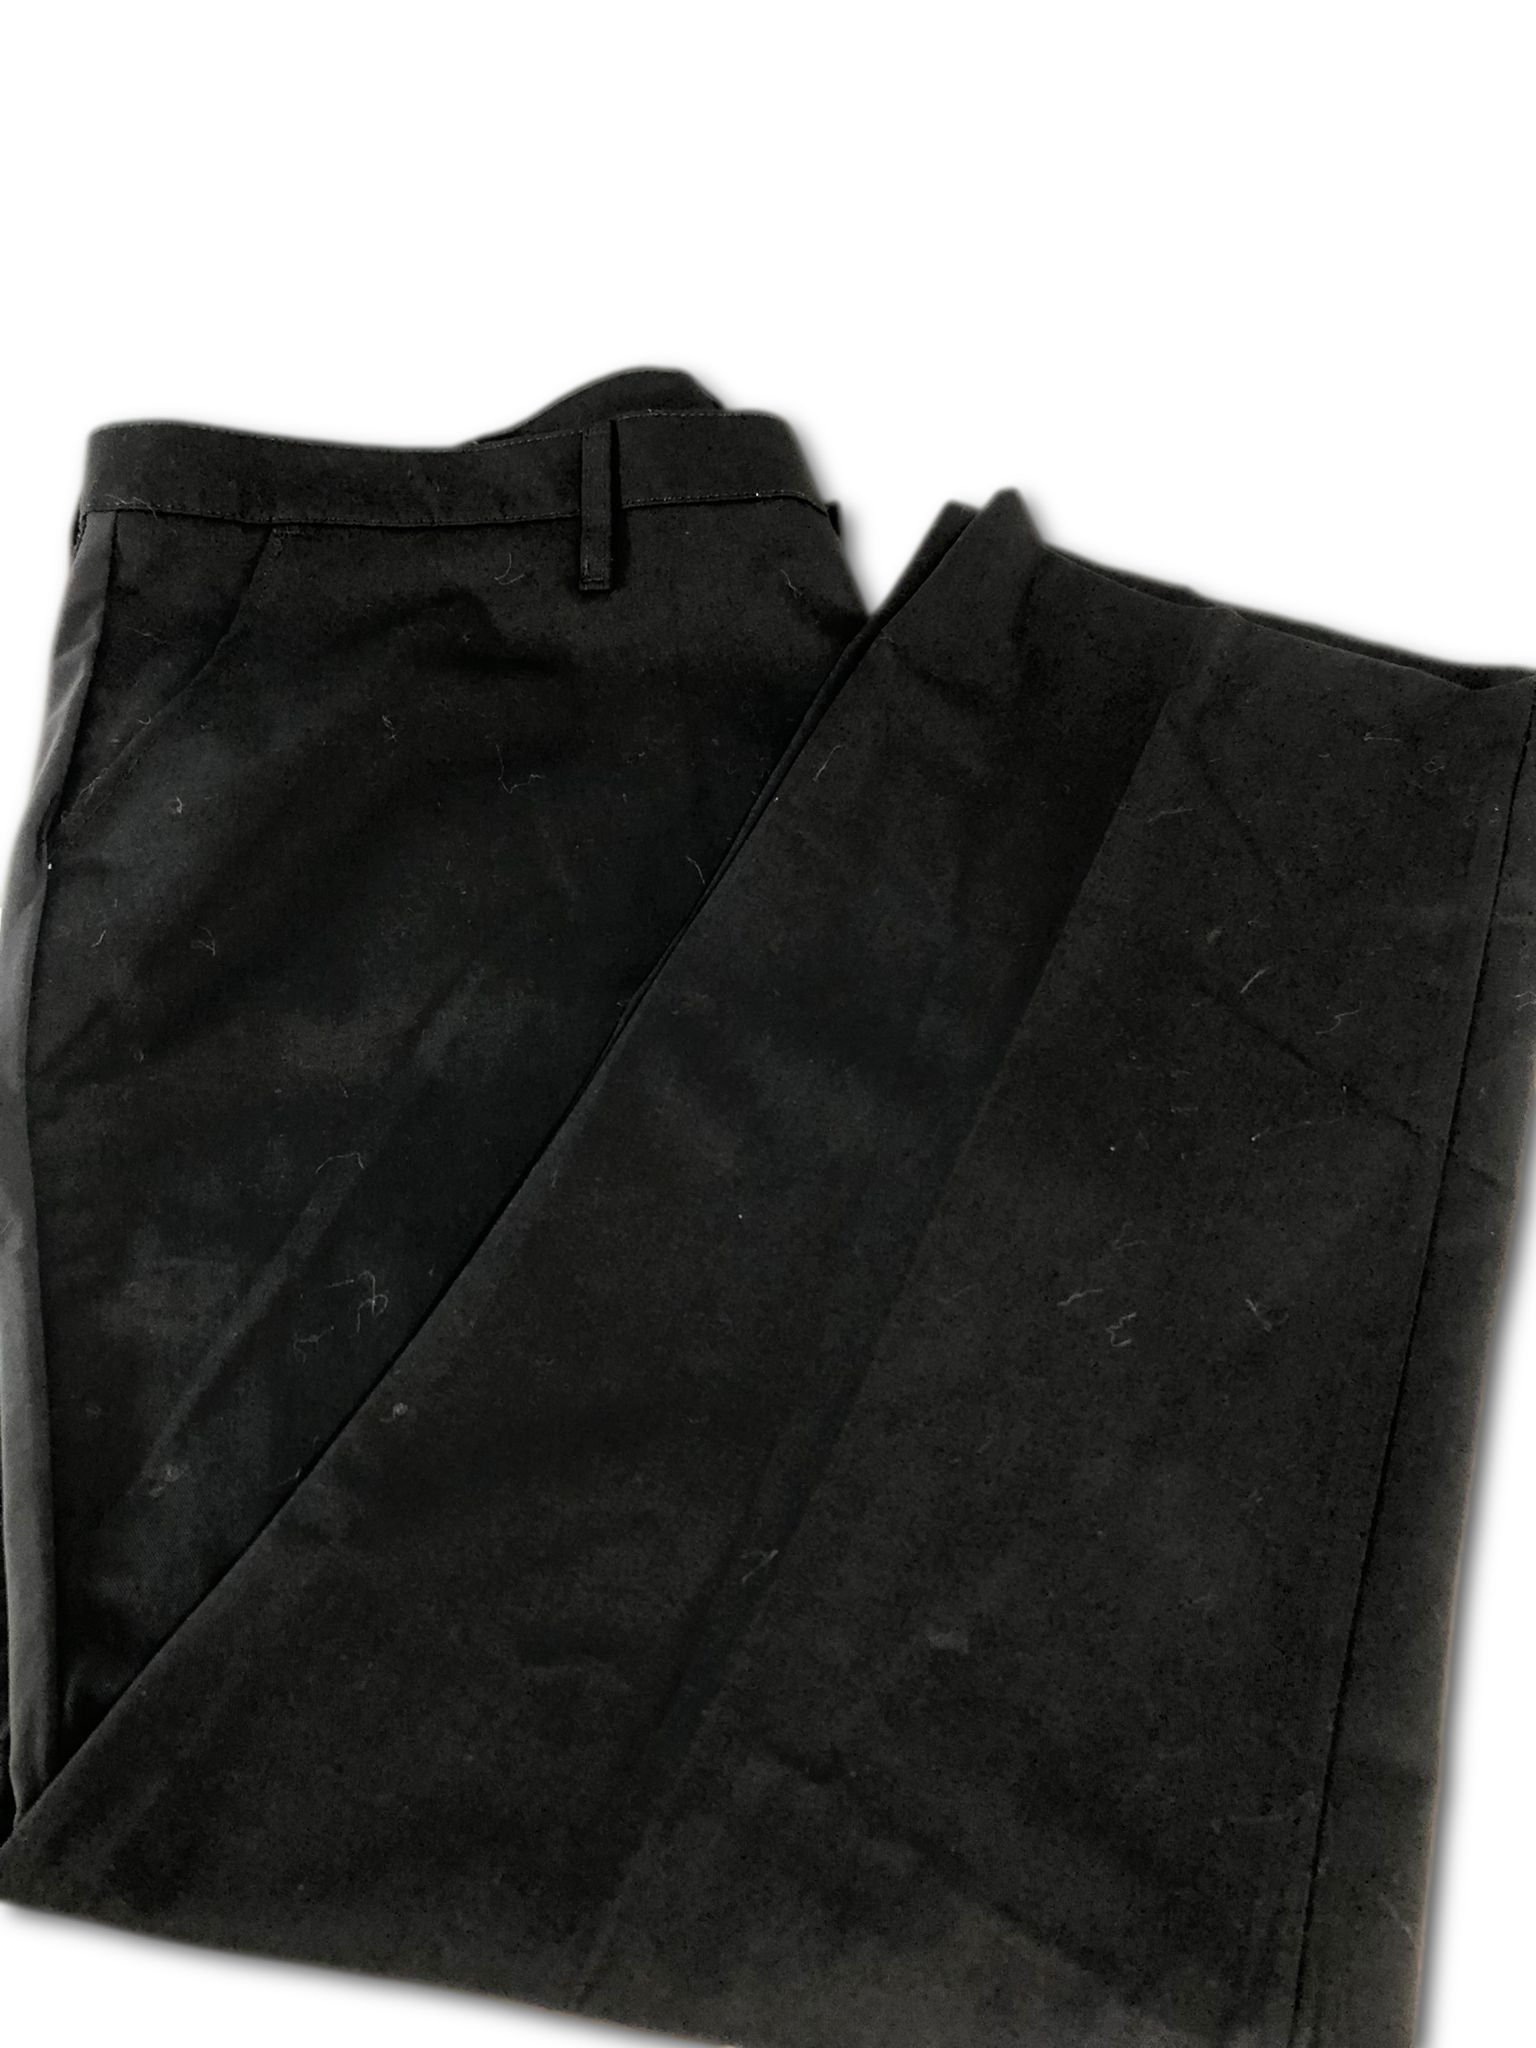 Red Kap Women's Utility Pant with Mimix - Black Color, Size 24x30